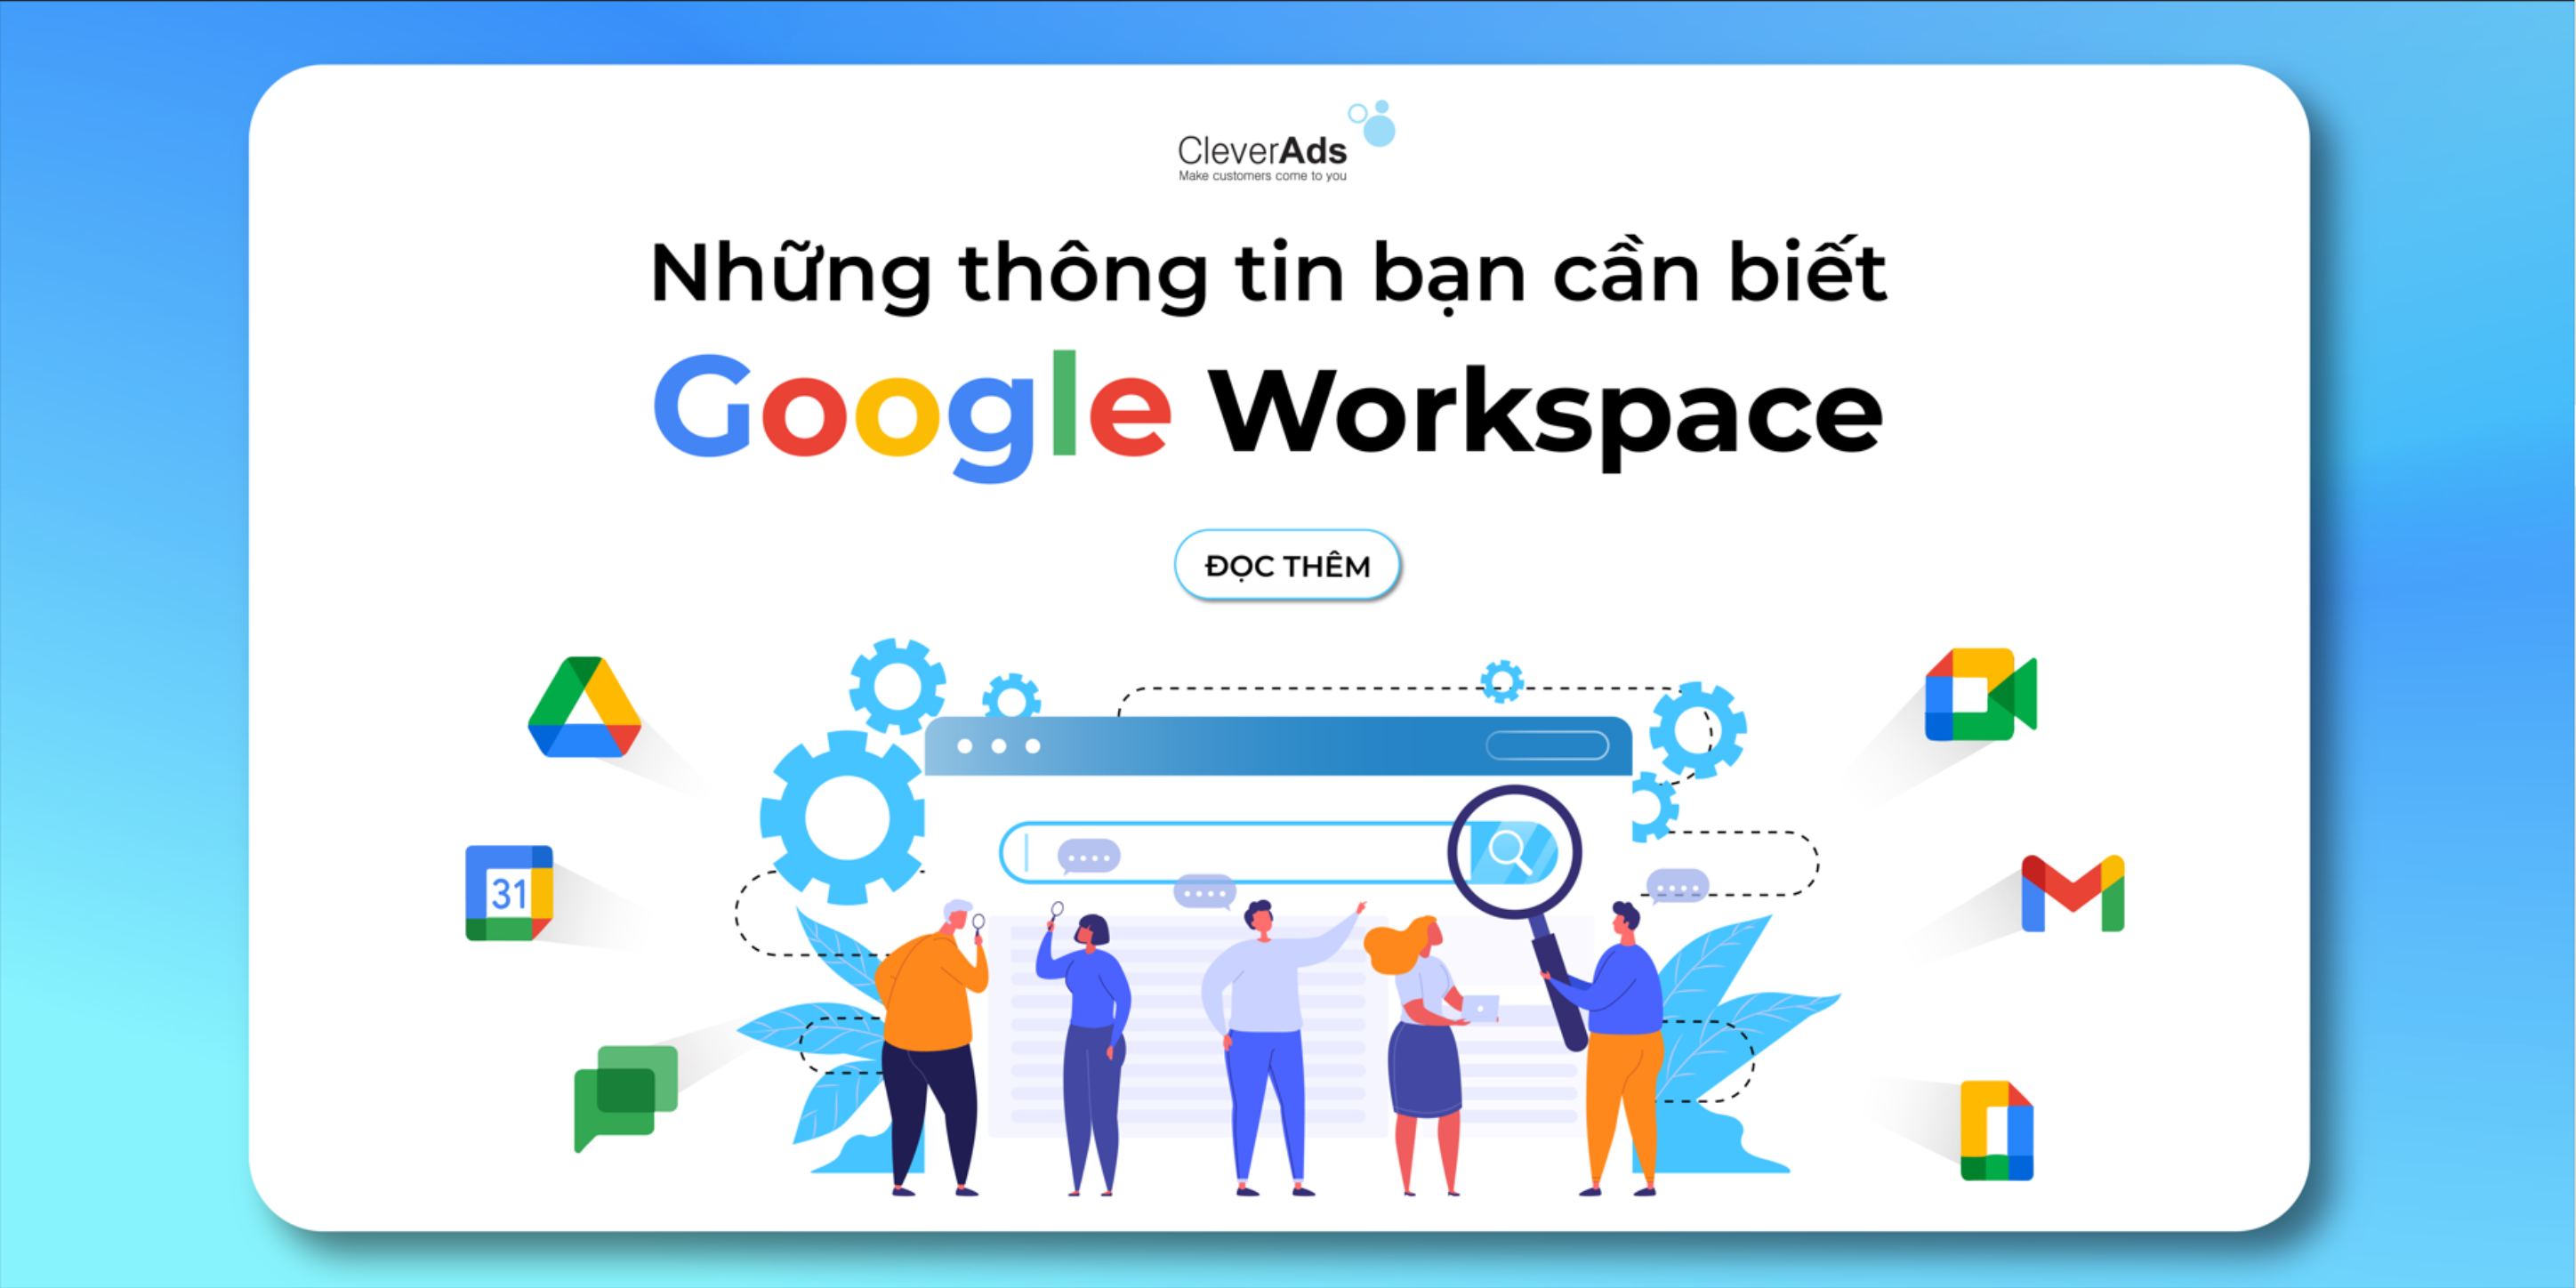 Google Workspace và những thông tin bạn cần biết